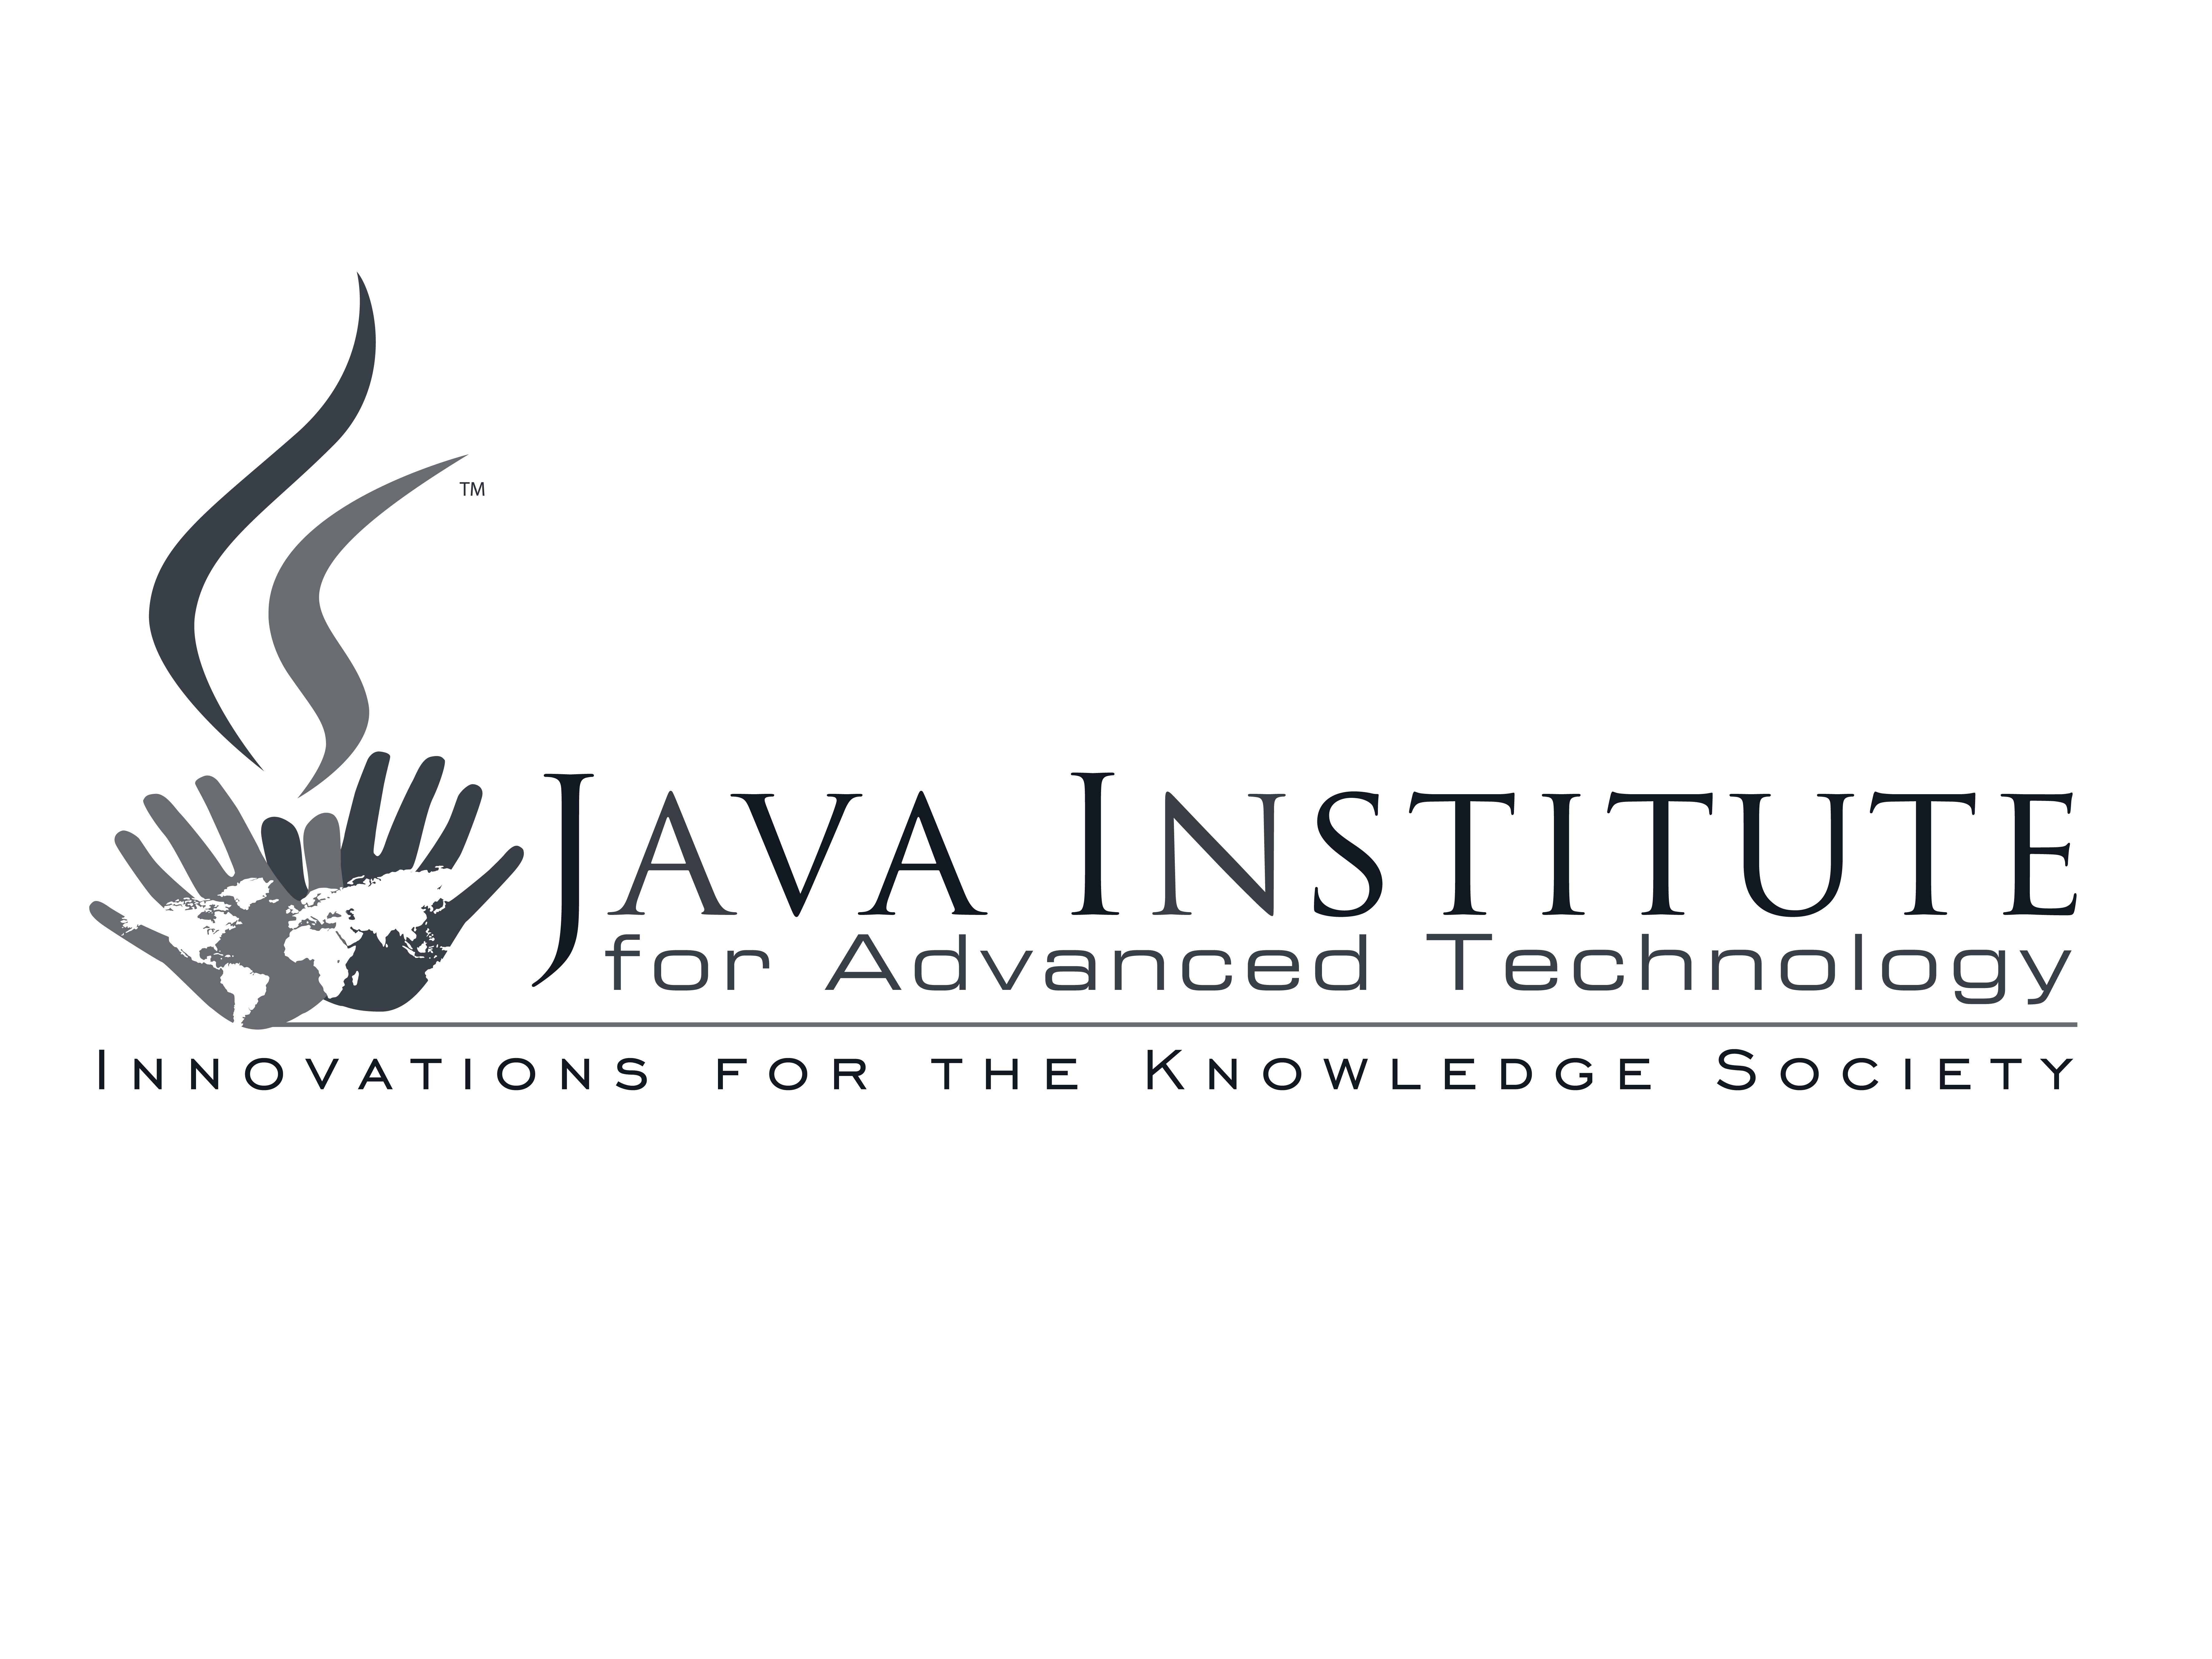 Java Institute